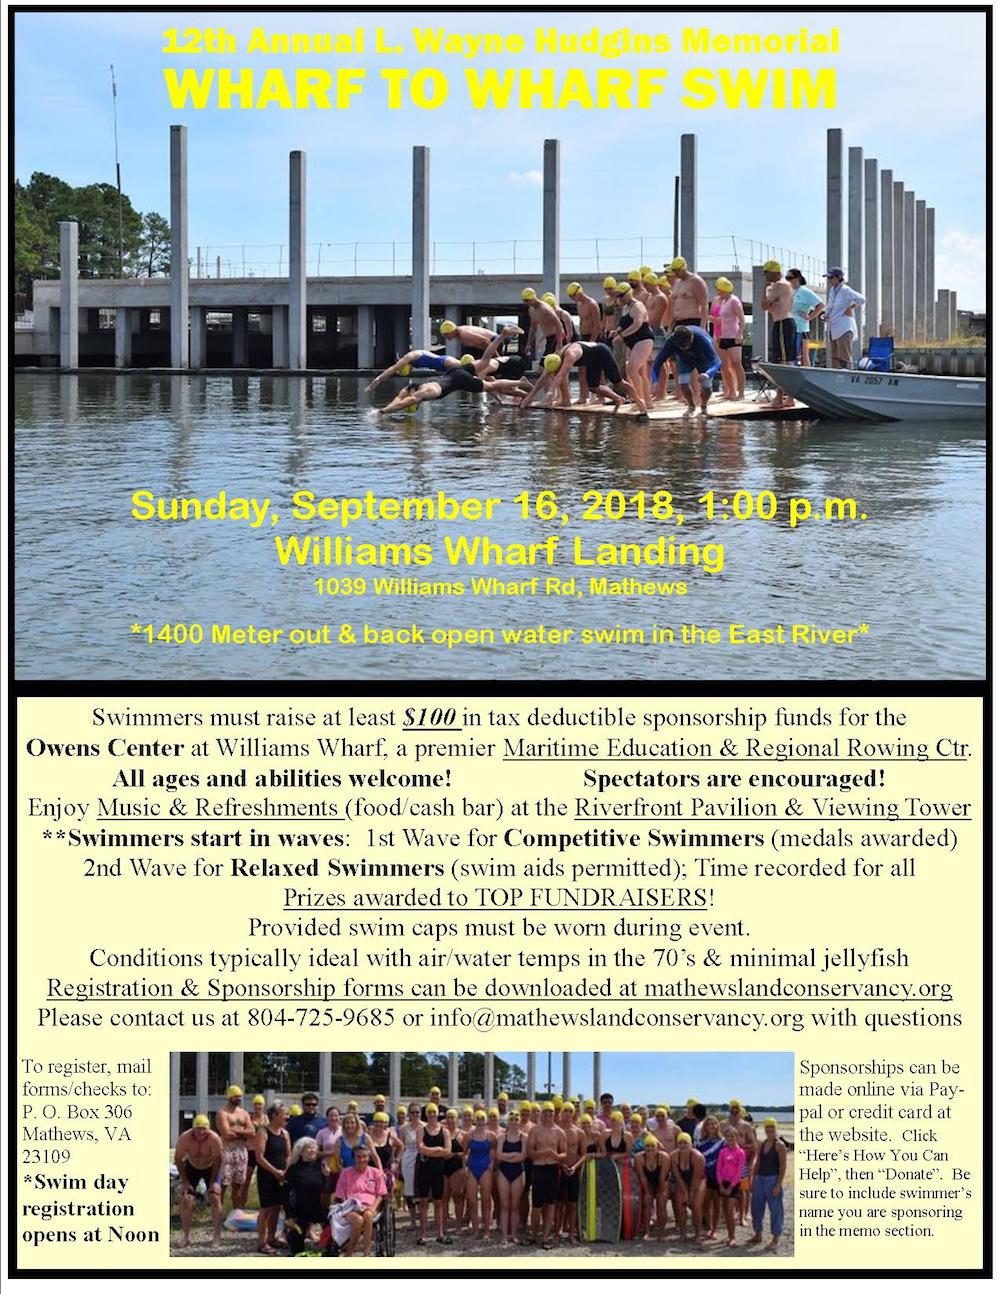 12th Annual Wharf to Wharf Swim